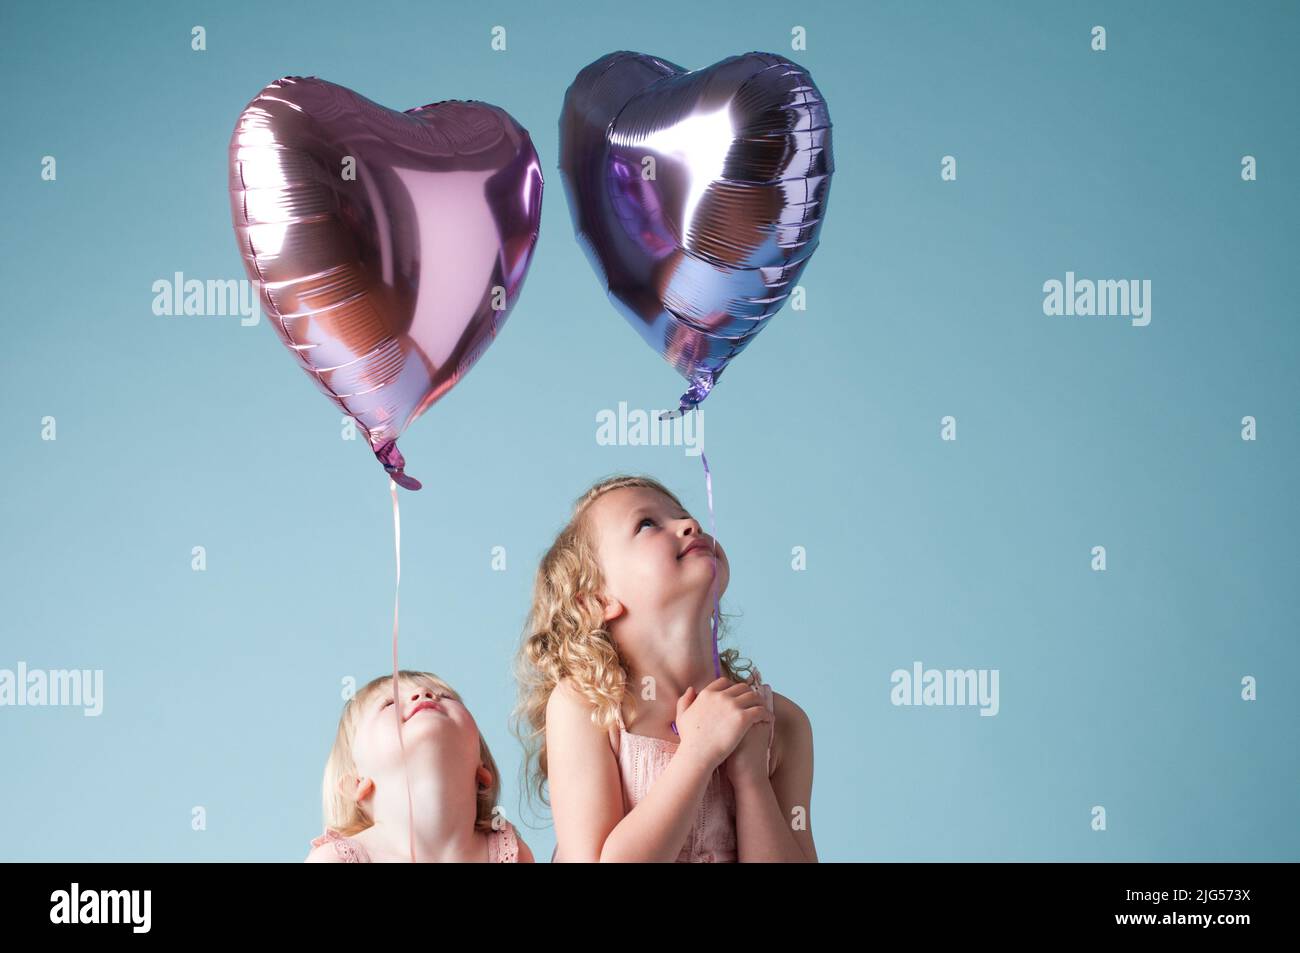 Le bonheur flotte autour de nous. Photo de deux sœurs mignonnes jouant avec des ballons de coeur sur un fond de studio. Banque D'Images